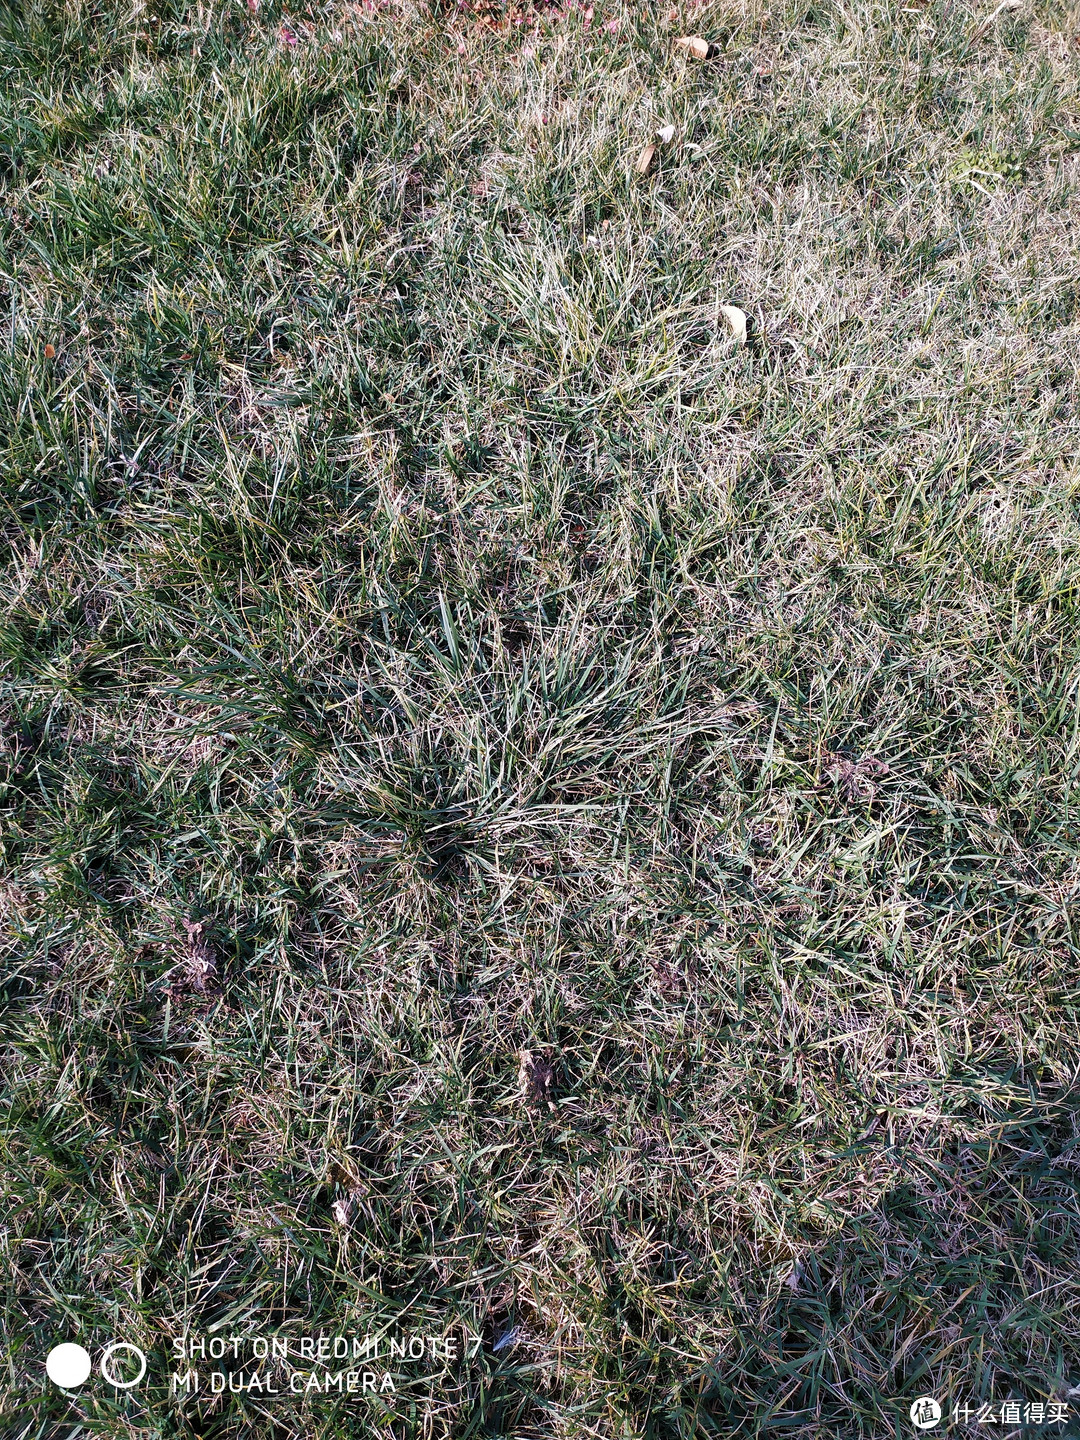 草坪显得特别干枯，虽然是冬天，但实际也没那么冷，草坪还是绿的，白平衡再次翻车